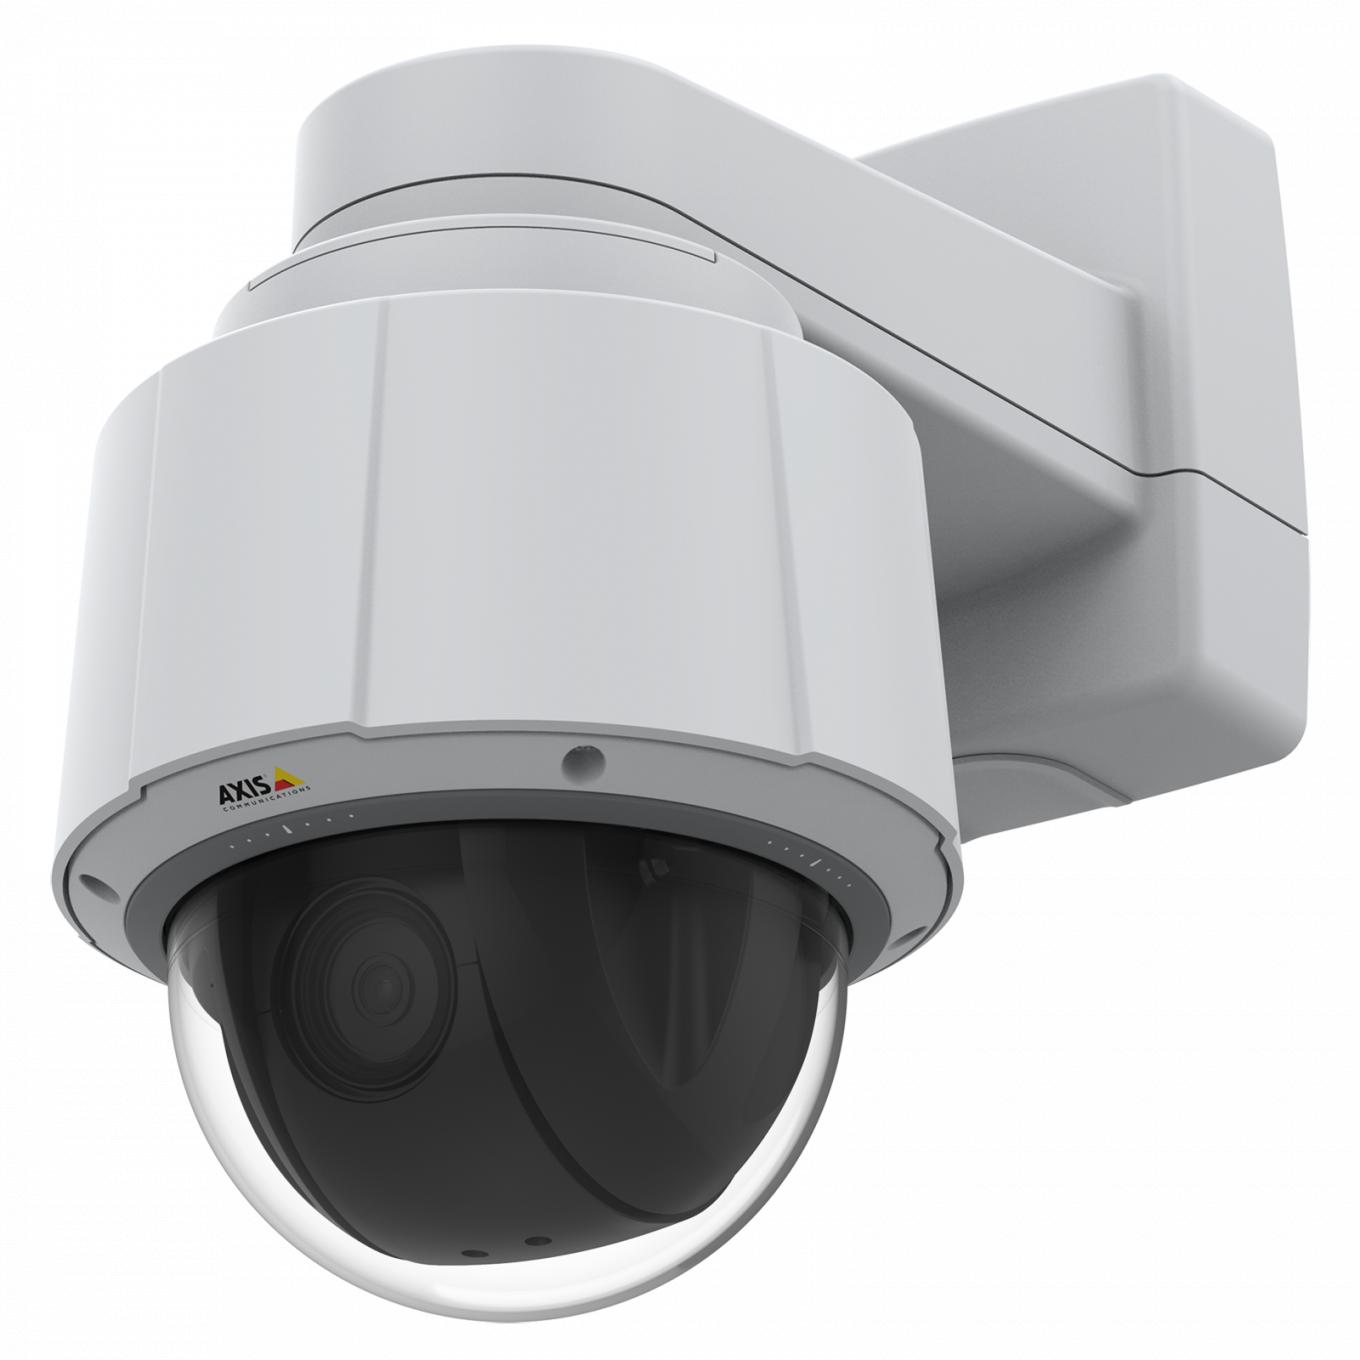 Axis IP Camera Q6075 имеет модуль TPM, сертифицированный на соответствие стандарту FIPS 140-2, уровень 2; а также встроенные средства аналитики